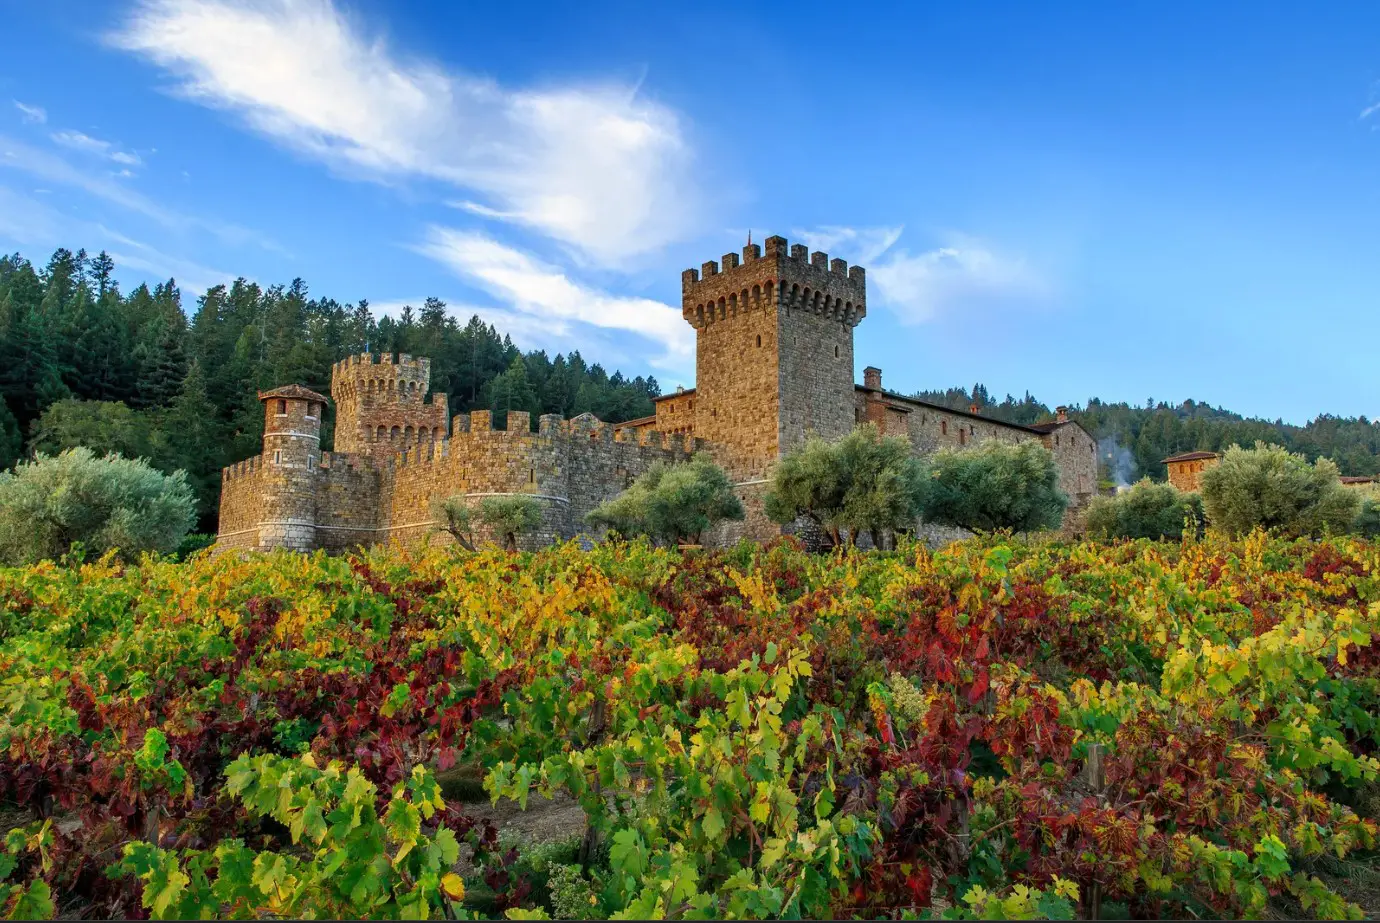 Image of Castello di Amorosa winery in Napa Valley